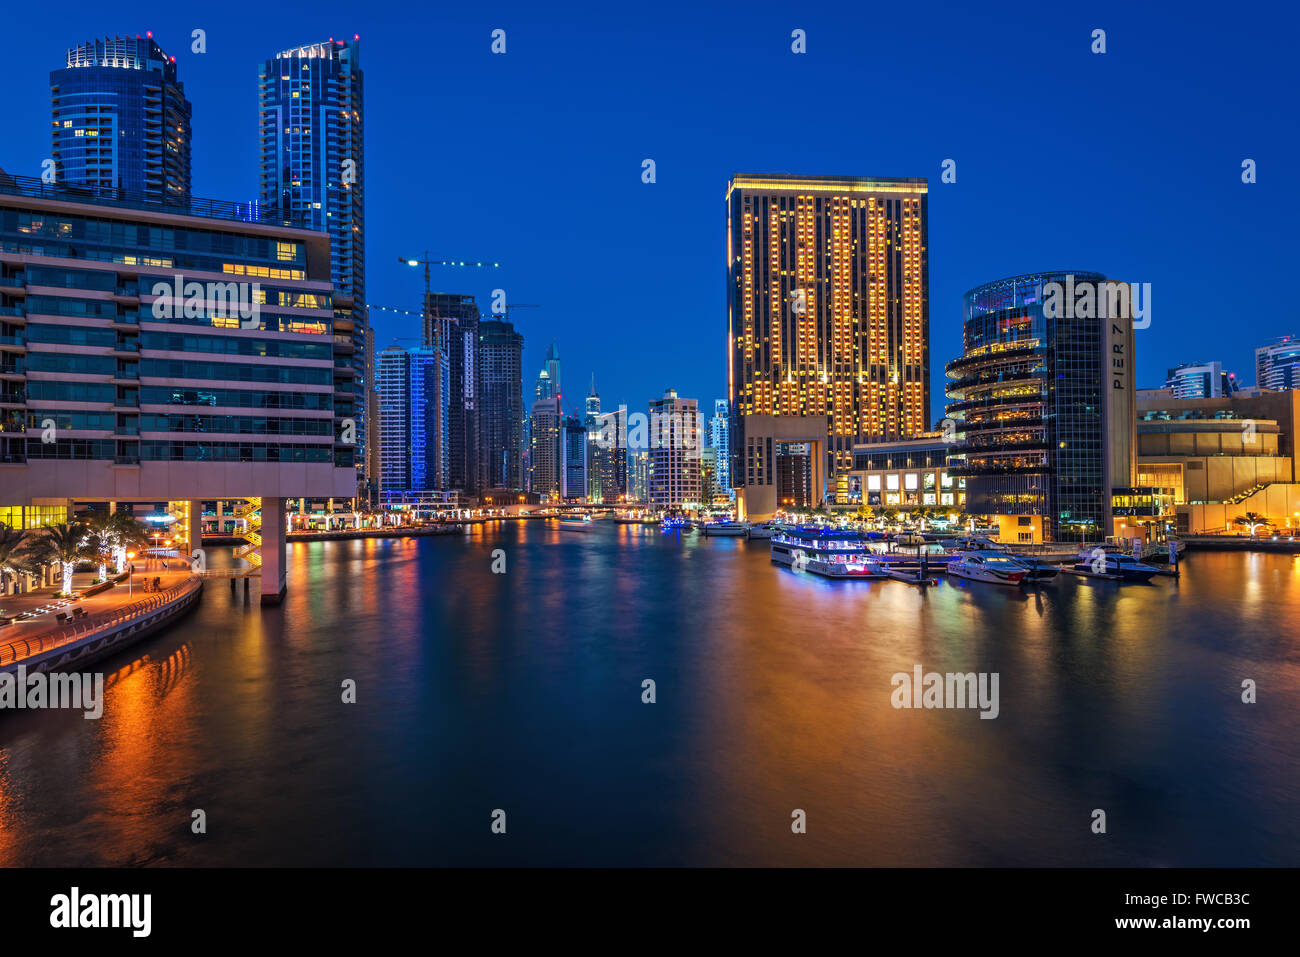 Dubai Marina at dusk, United Arab Emirates, Middle East Stock Photo